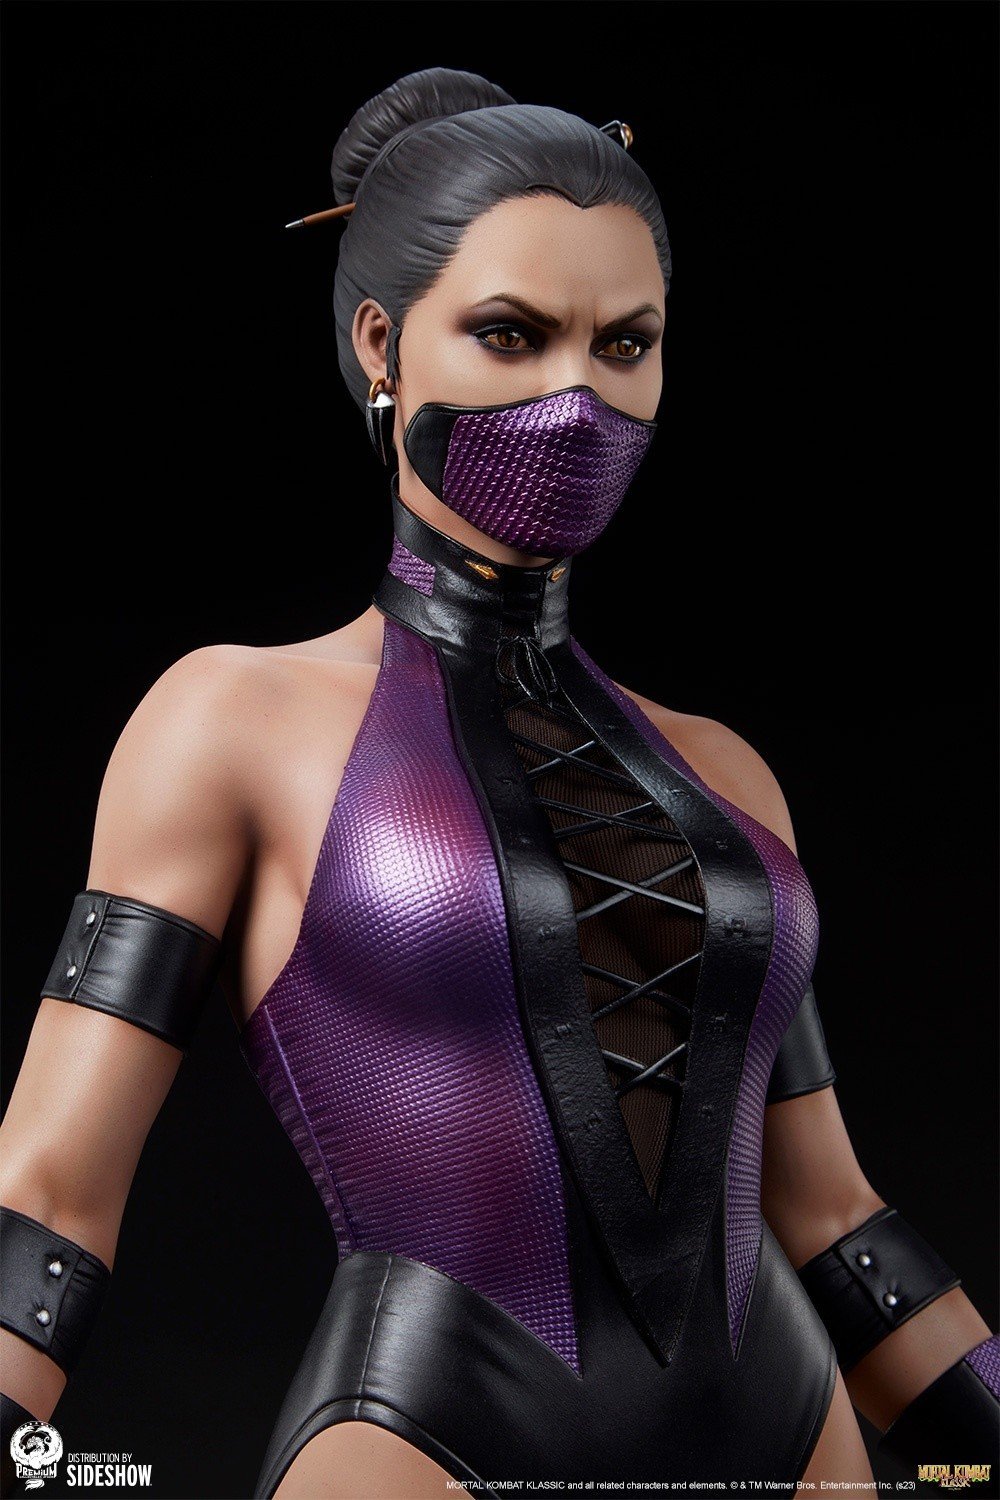 Фигурка Милины с большой грудью из Ultimate Mortal Kombat 3 появилась в продаже